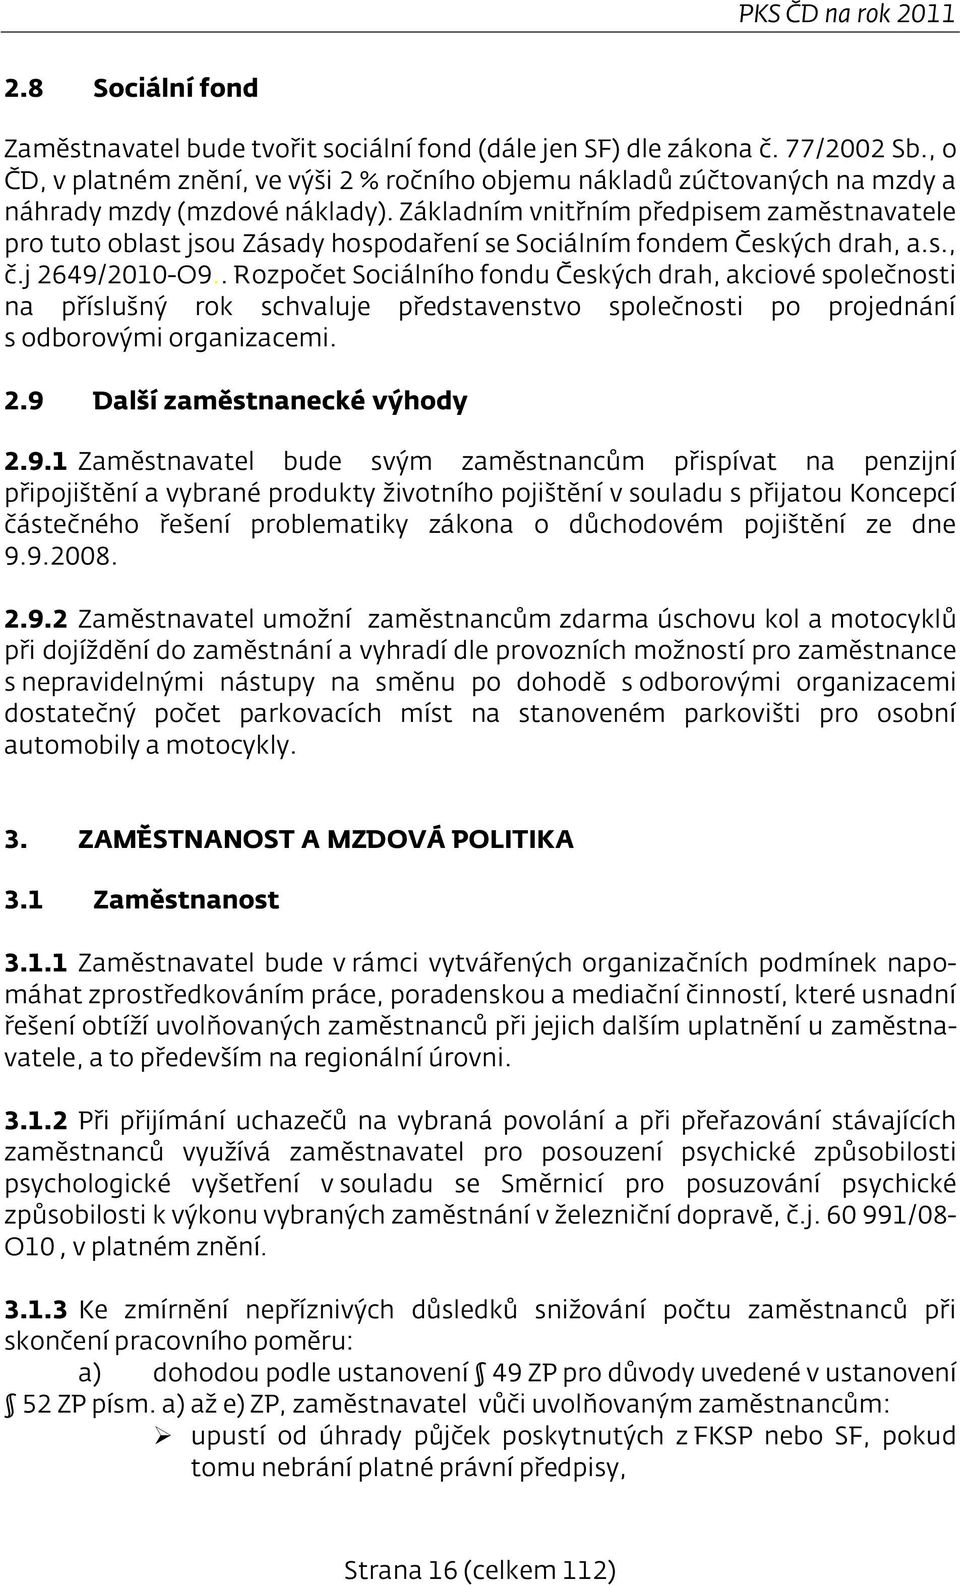 Základním vnitřním předpisem zaměstnavatele pro tuto oblast jsou Zásady hospodaření se Sociálním fondem Českých drah, a.s., č.j 2649/2010-O9.